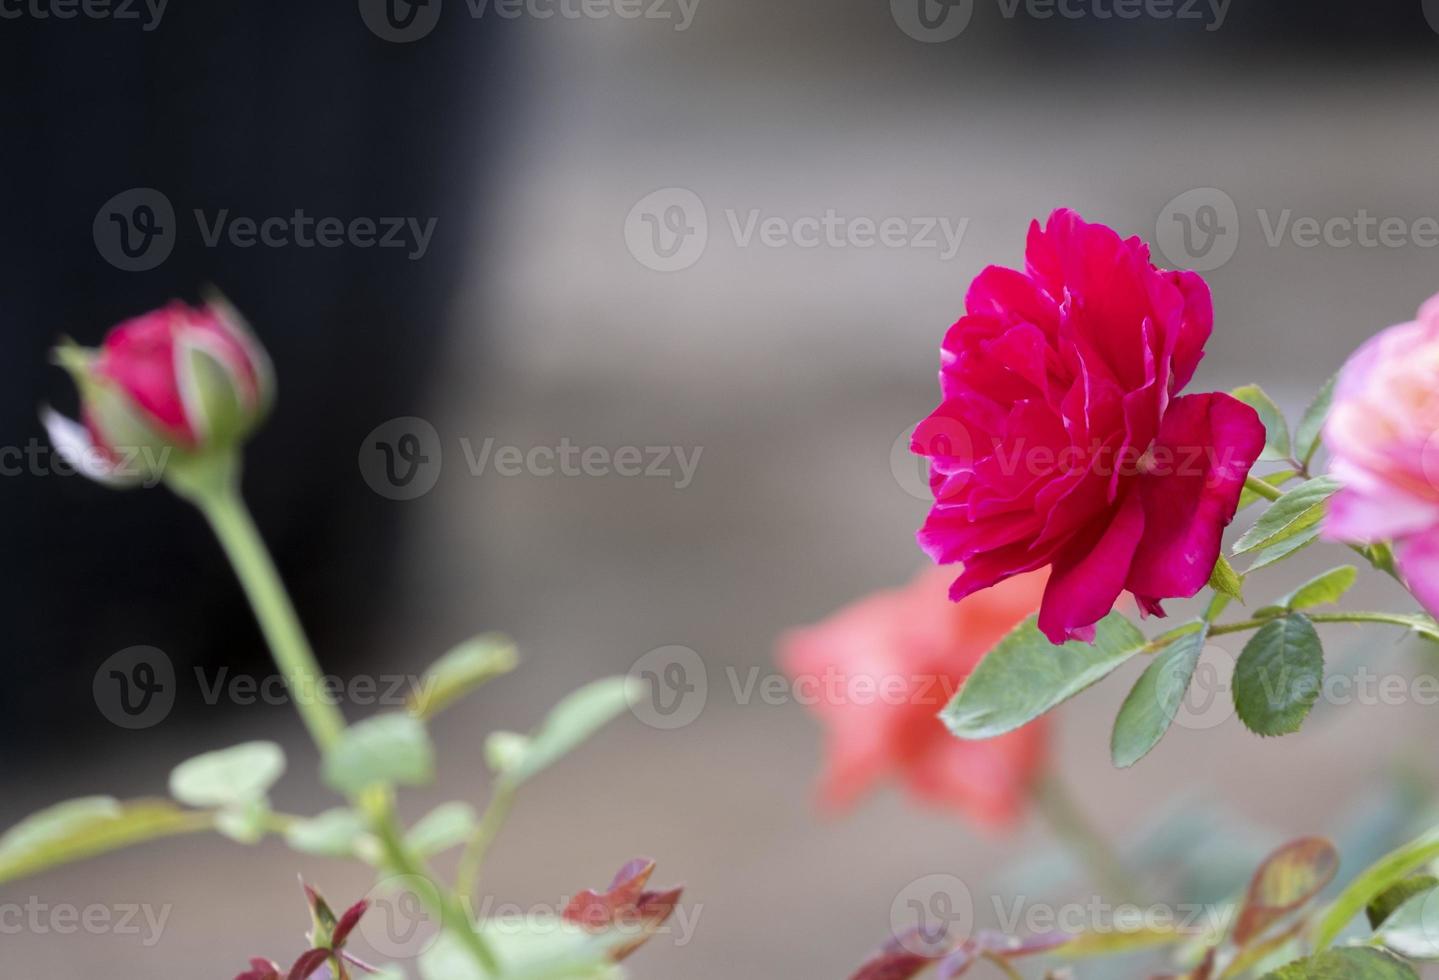 beleza foco seletivo suave rosa vermelha multi pétalas forma abstrata com folhas verdes no jardim botânico. símbolo do amor no dia dos namorados. flora de aroma suave e perfumado. foto